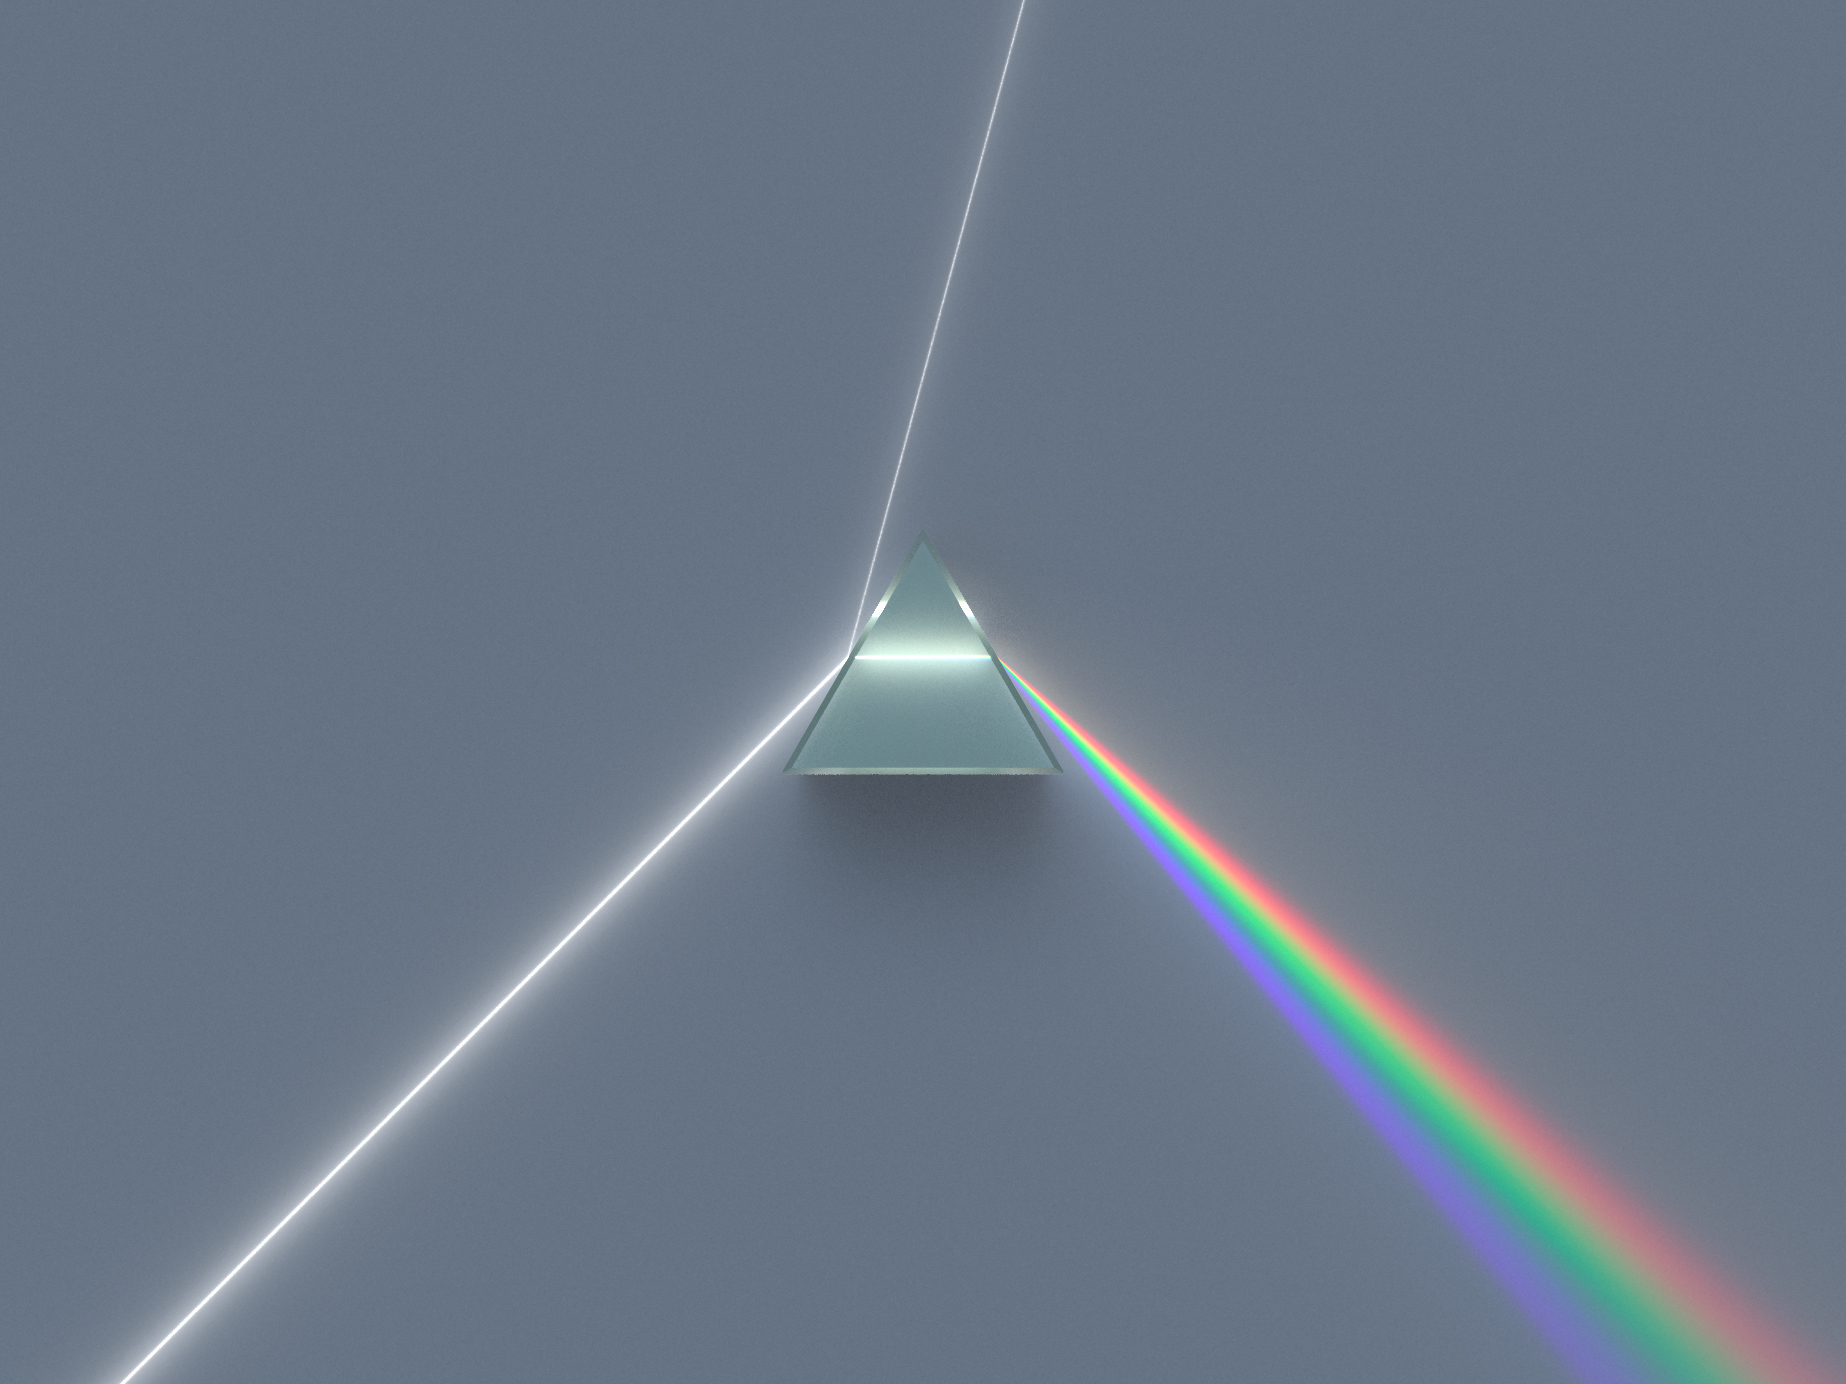 Dispersive Prism Illustration by Wikipedia user Spigget